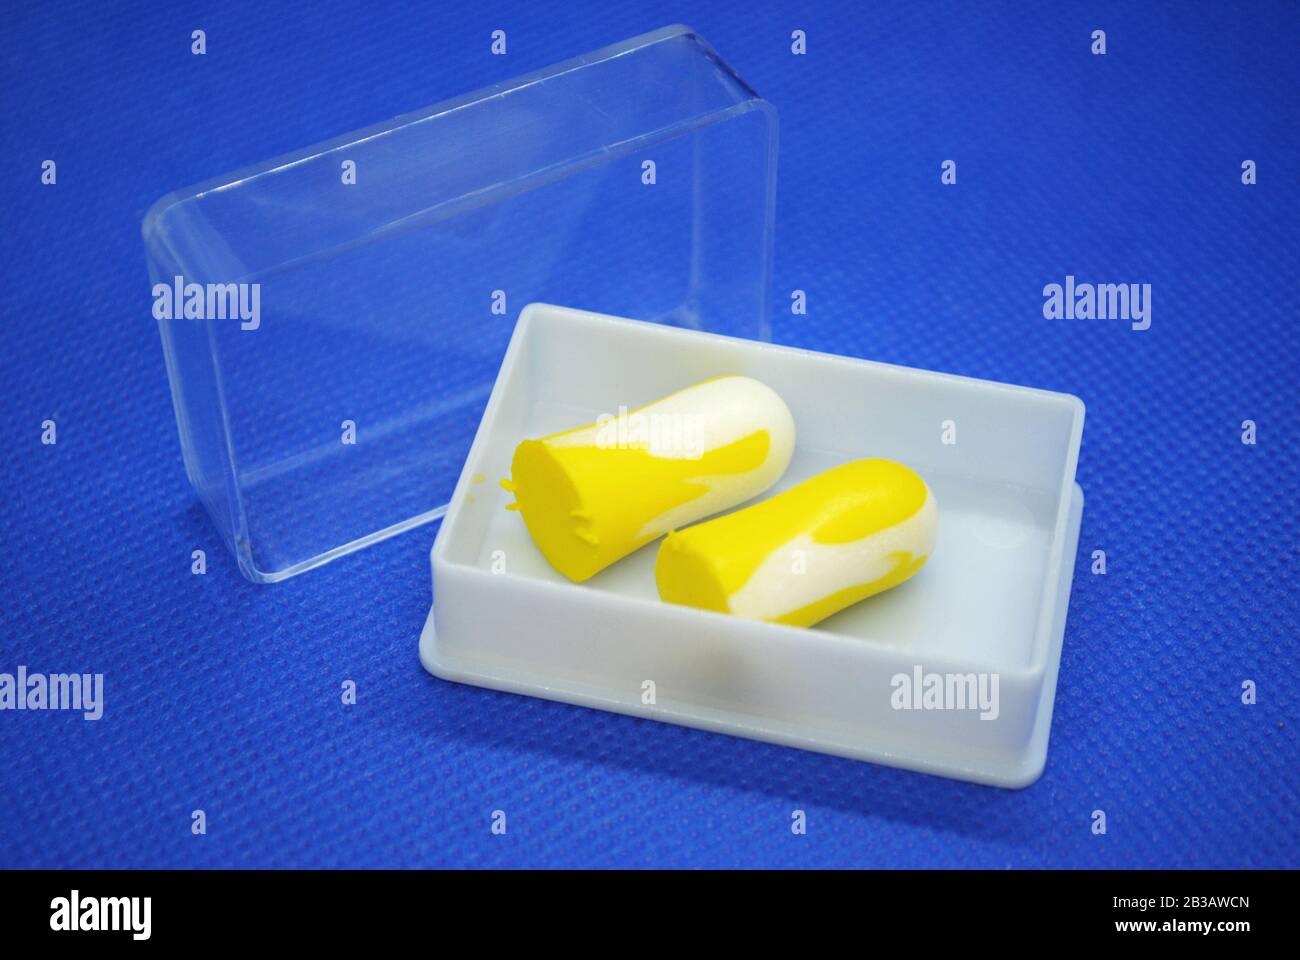 Isoliertes Paar bunt weißer und gelber Ohrenstöpsel in einer weißen Kunststoffbox mit transparenter Abdeckung auf blauem Hintergrund Stockfoto